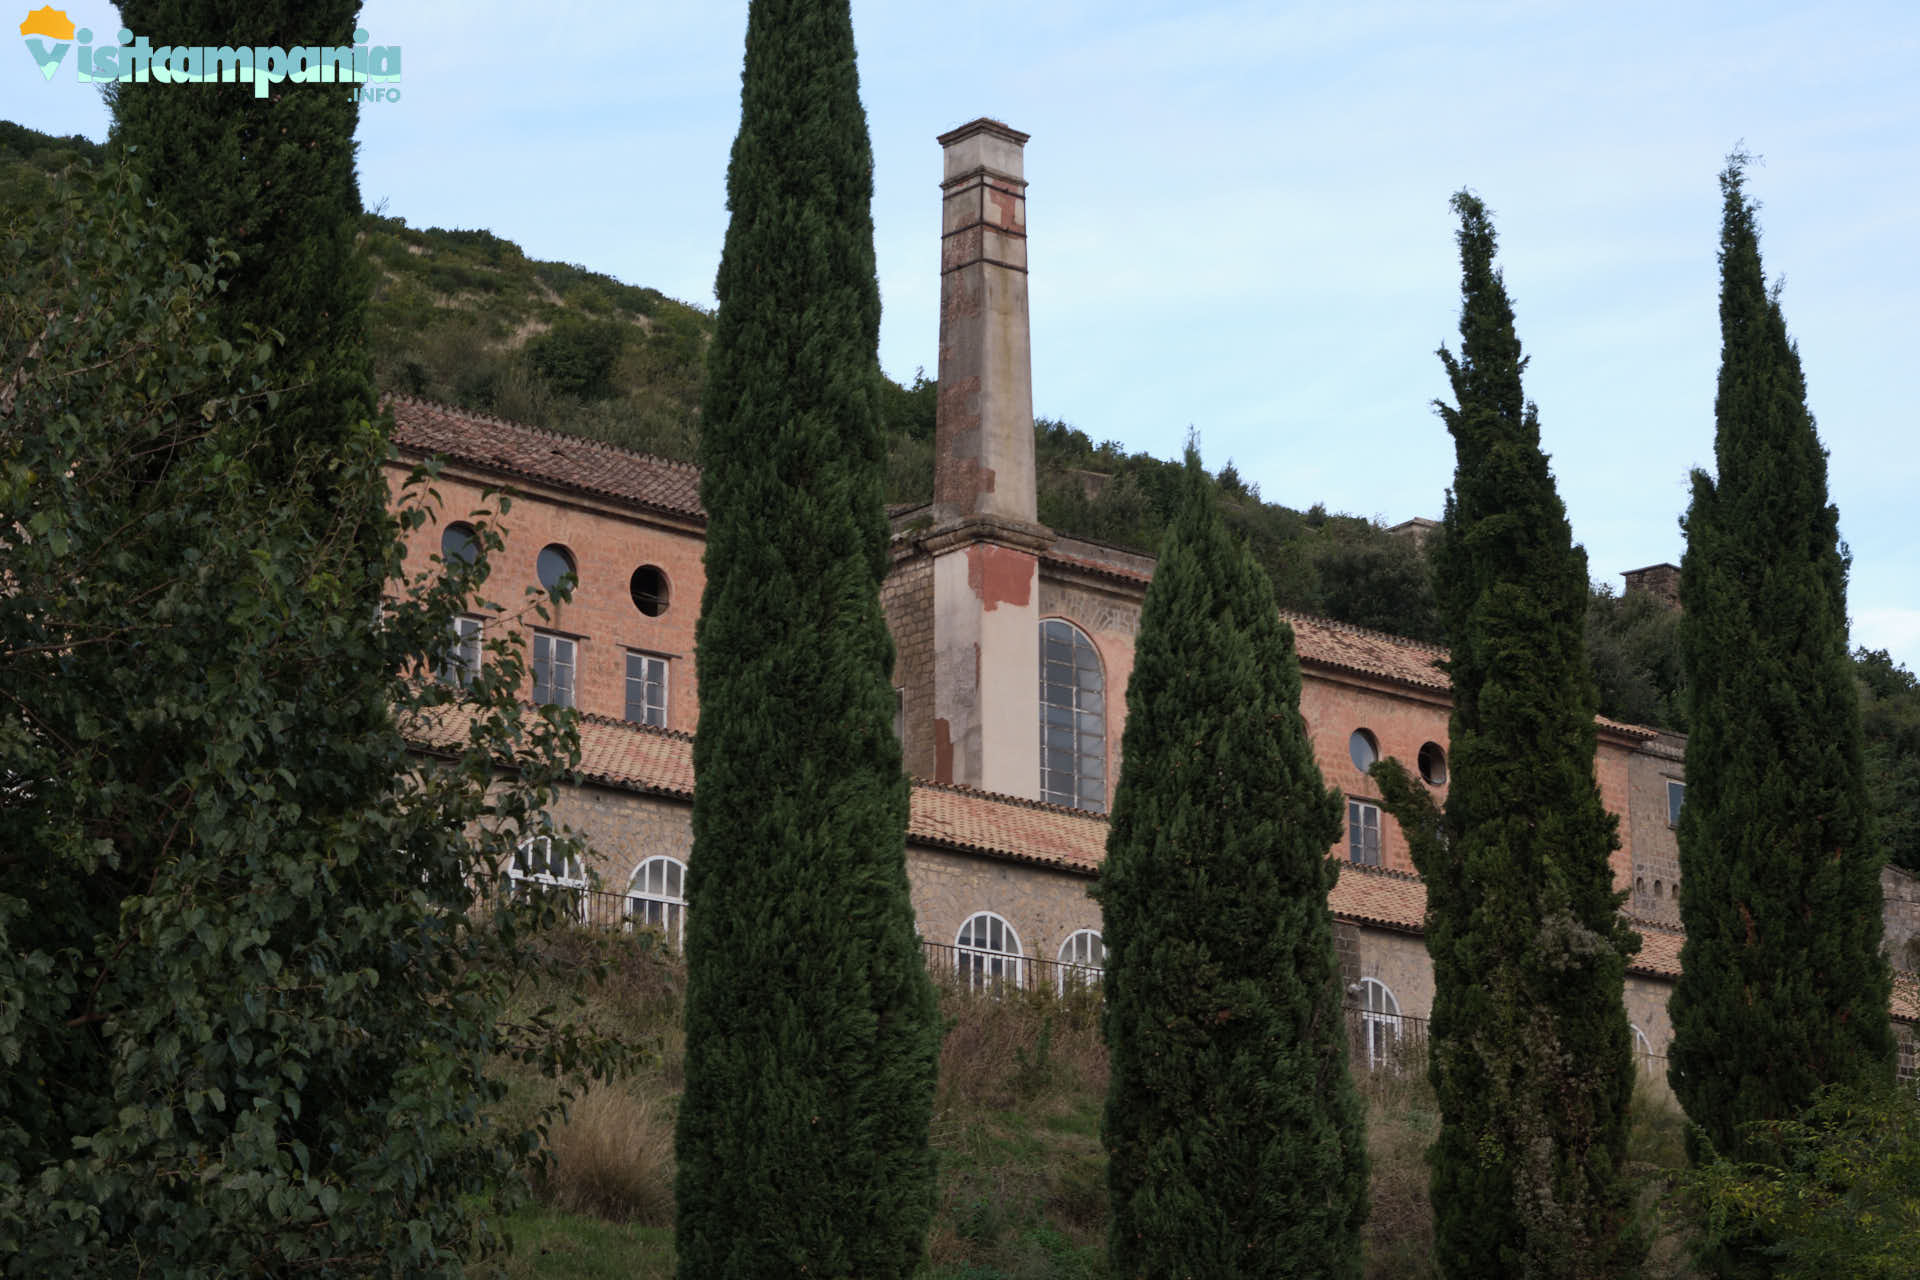 Real Belvedere di San Leucio, la filanda e la coculliera